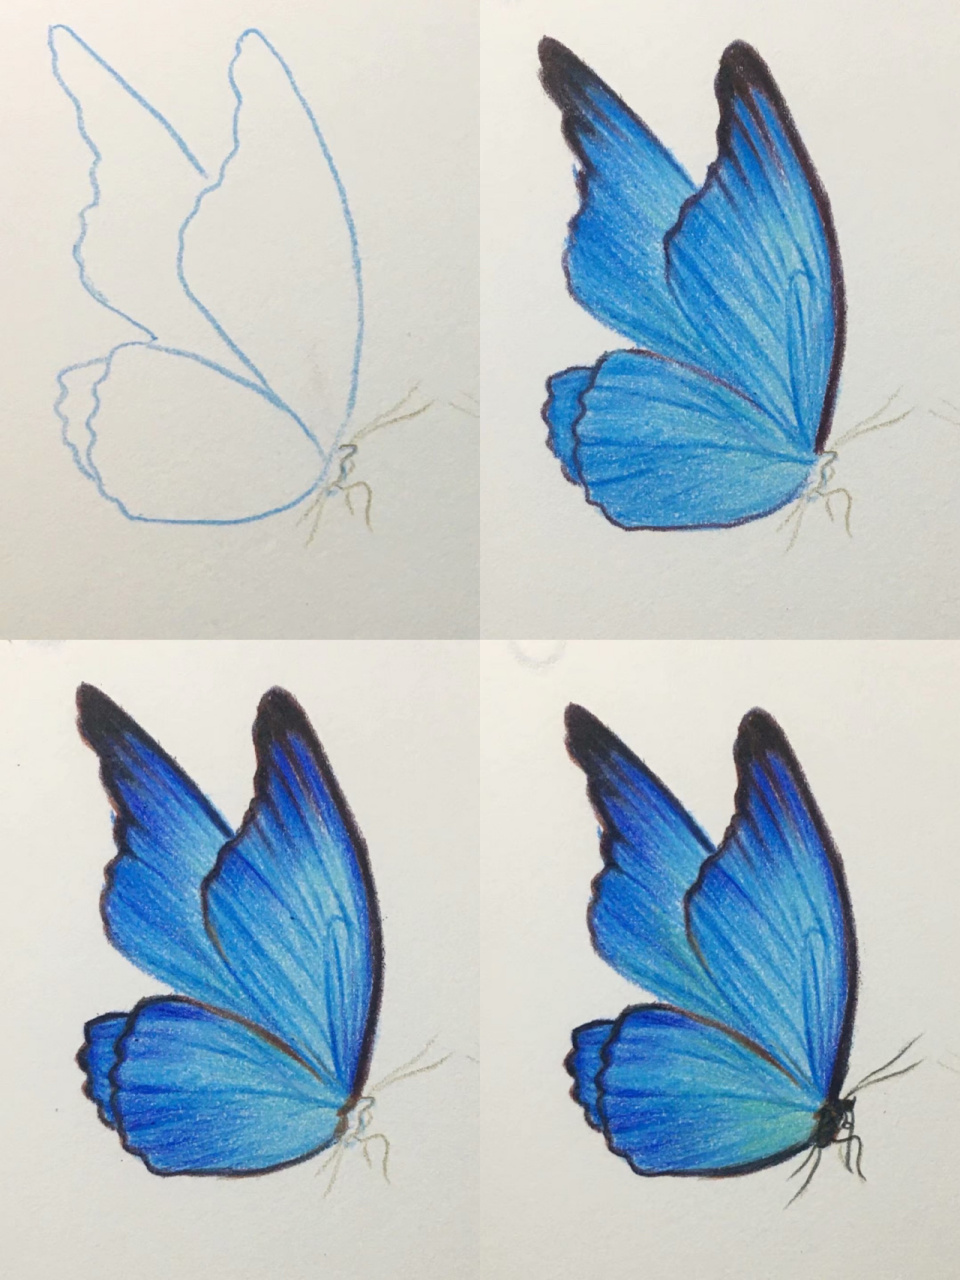 彩铅画简单又好看的蓝色蝴蝶03,含过程图 视频教程在前面的笔记